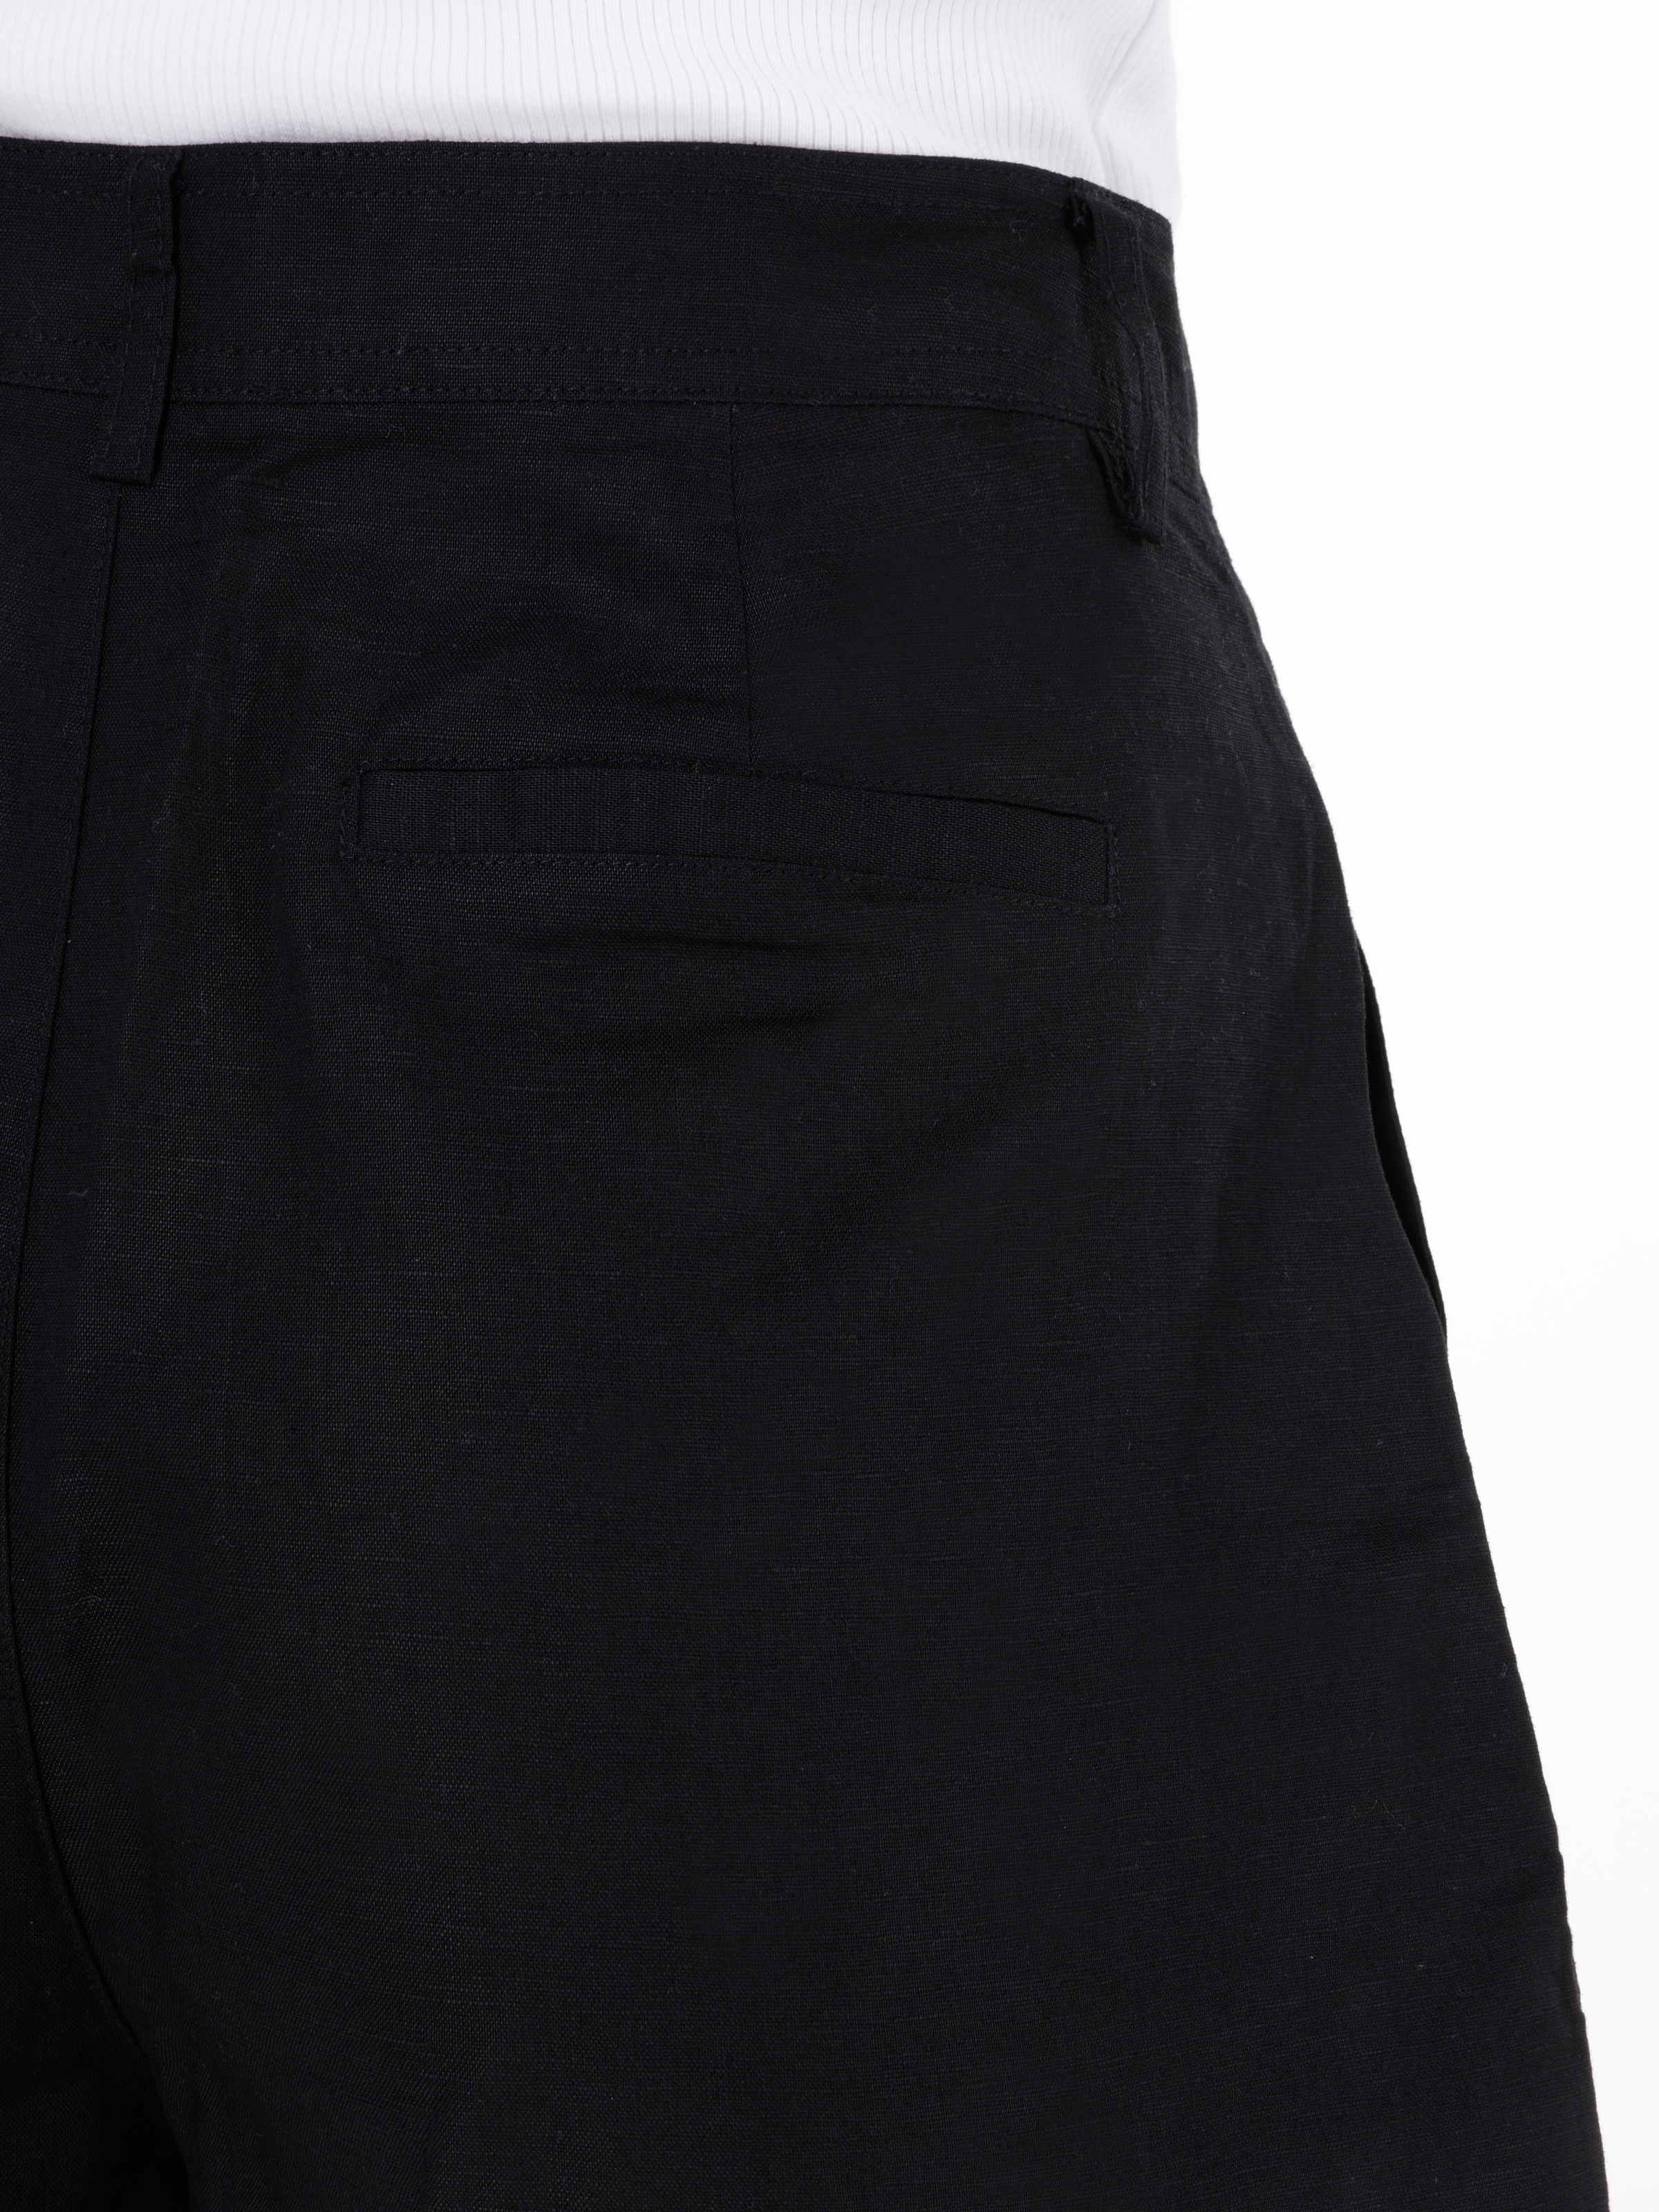 Afișați detalii pentru Short / Pantaloni Scurti De Dama Negru Regular Fit  